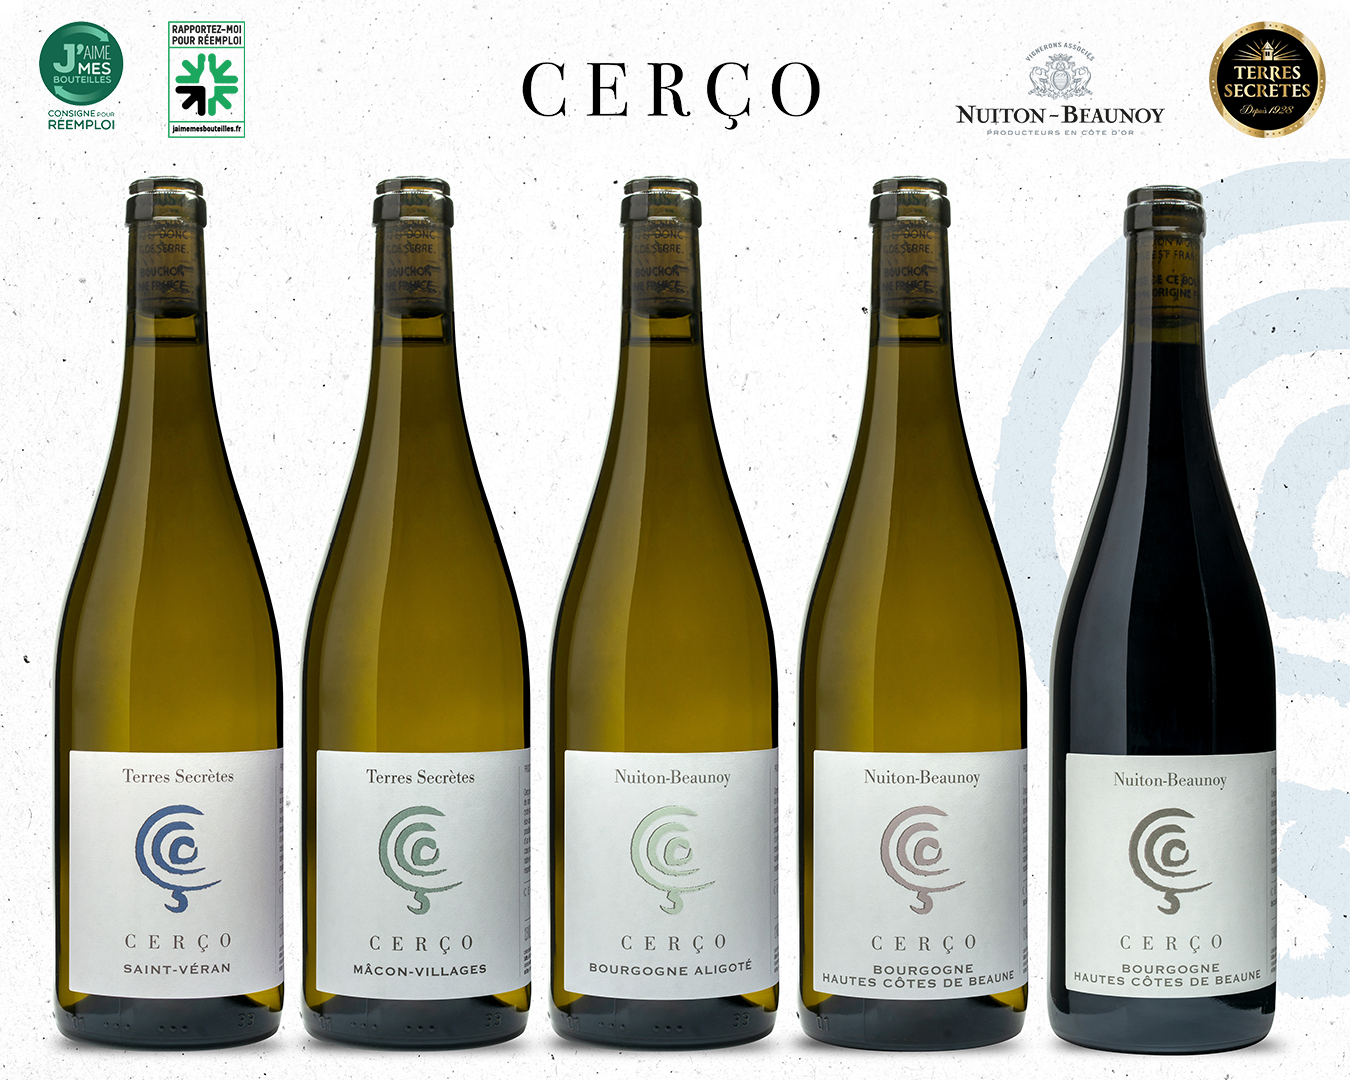 Des bouteilles consignées pour la gamme Cerço.